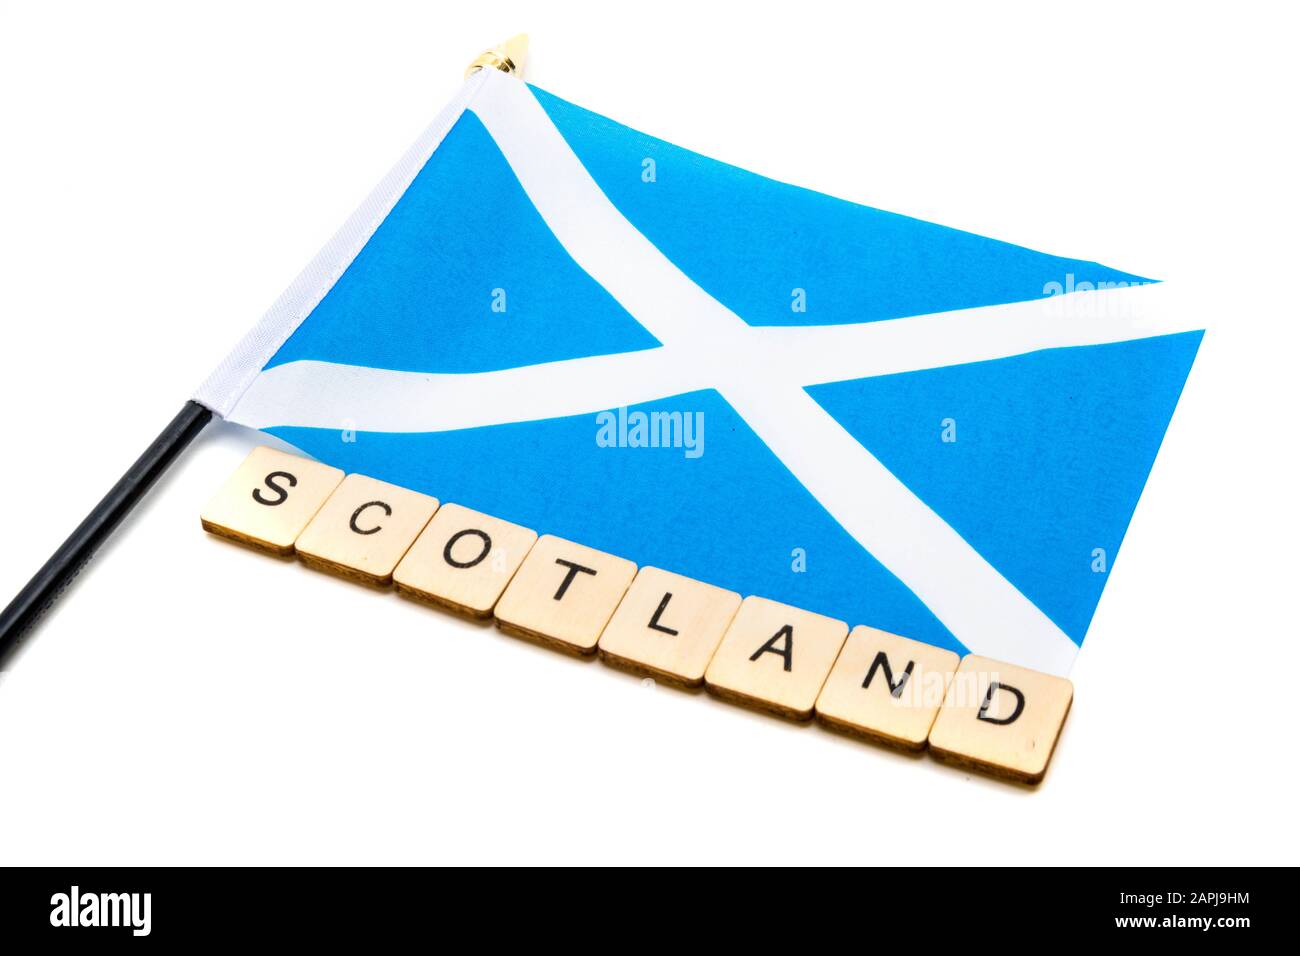 Die Nationalflaggen Schottlands, der Saltaire oder das Kreuz von St Andrews auf weißem Hintergrund mit einem Schild, das Schottland liest Stockfoto